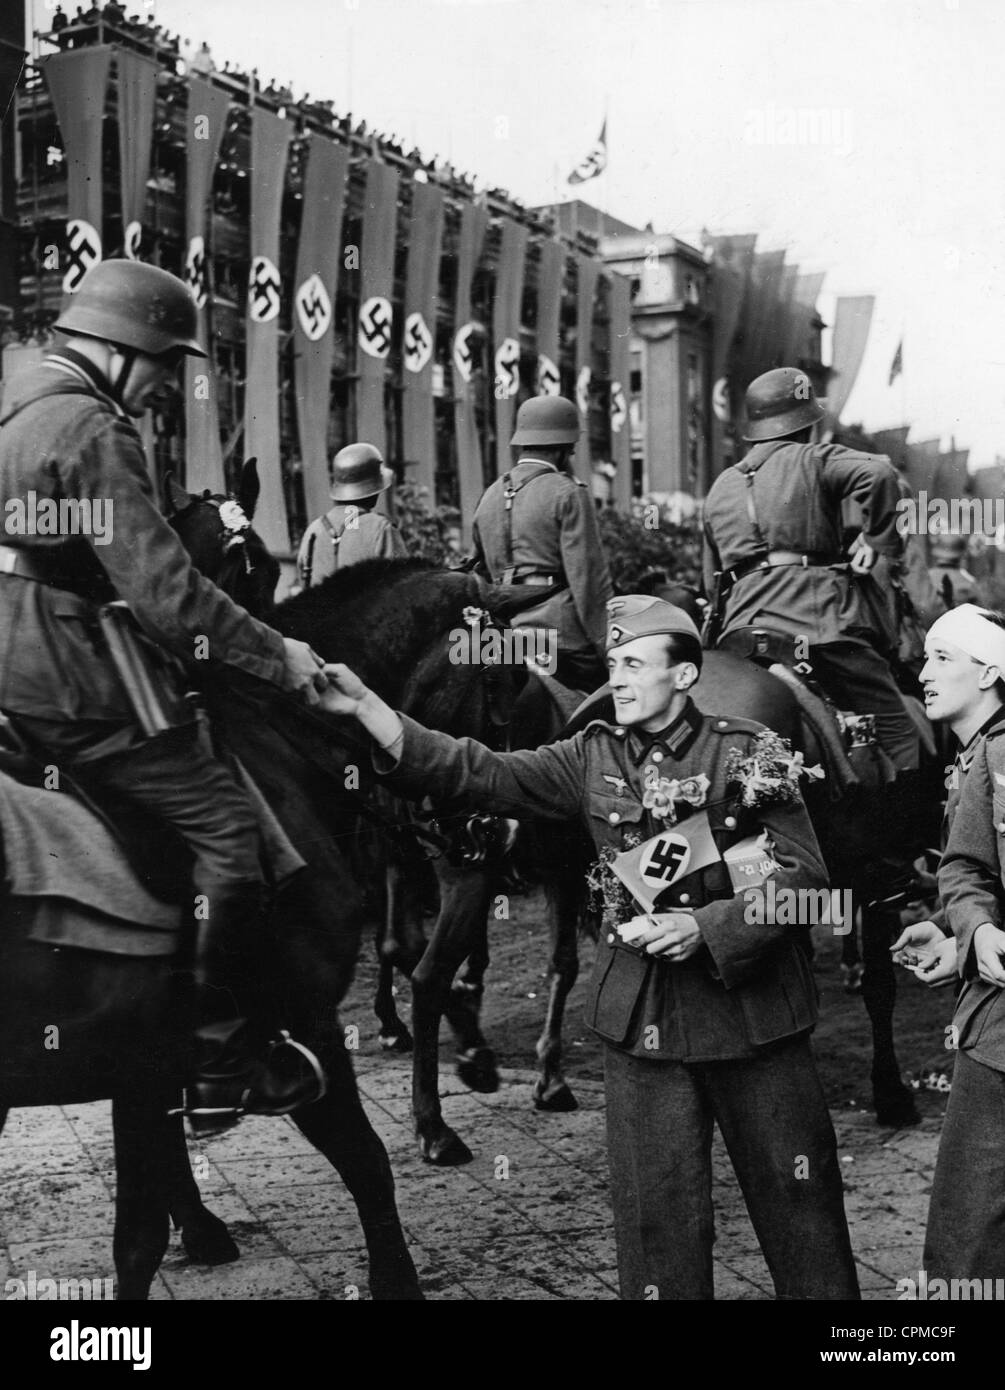 La revue de la victoire après la campagne en français à Berlin, 1940 Banque D'Images